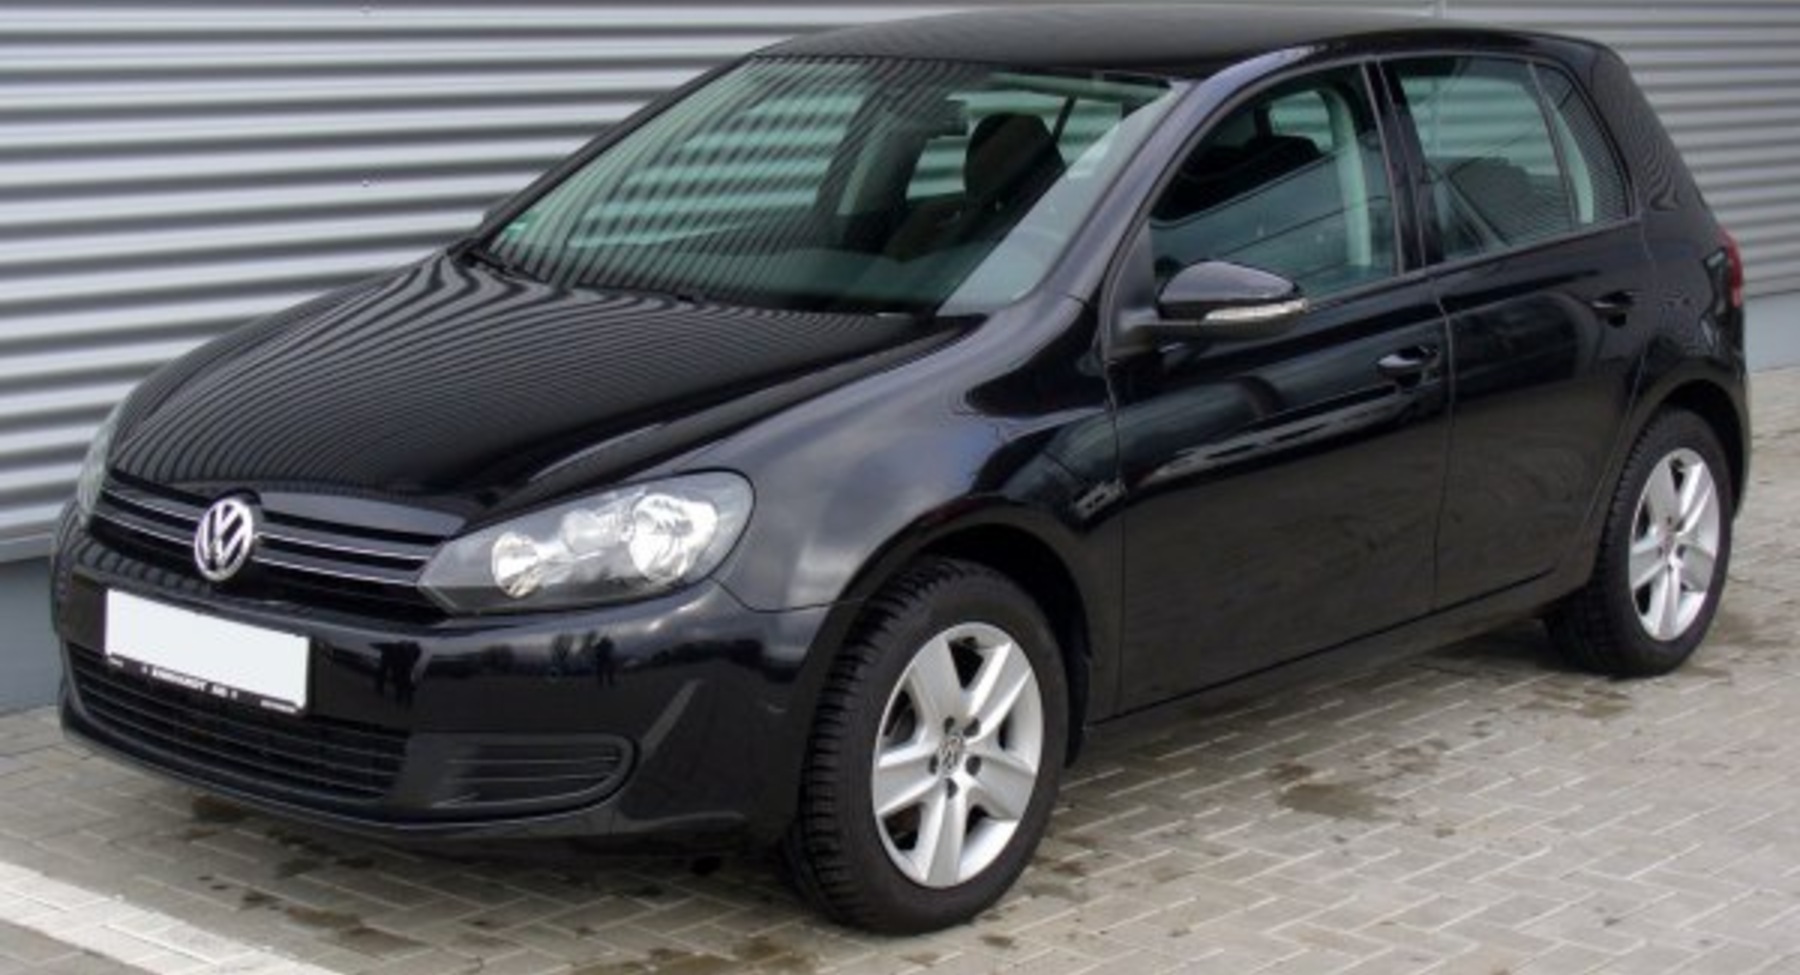 Volkswagen Golf VI (5-door) 1.2 TSI (105 Hp) BMT 2009, 2010, 2011, 2012 